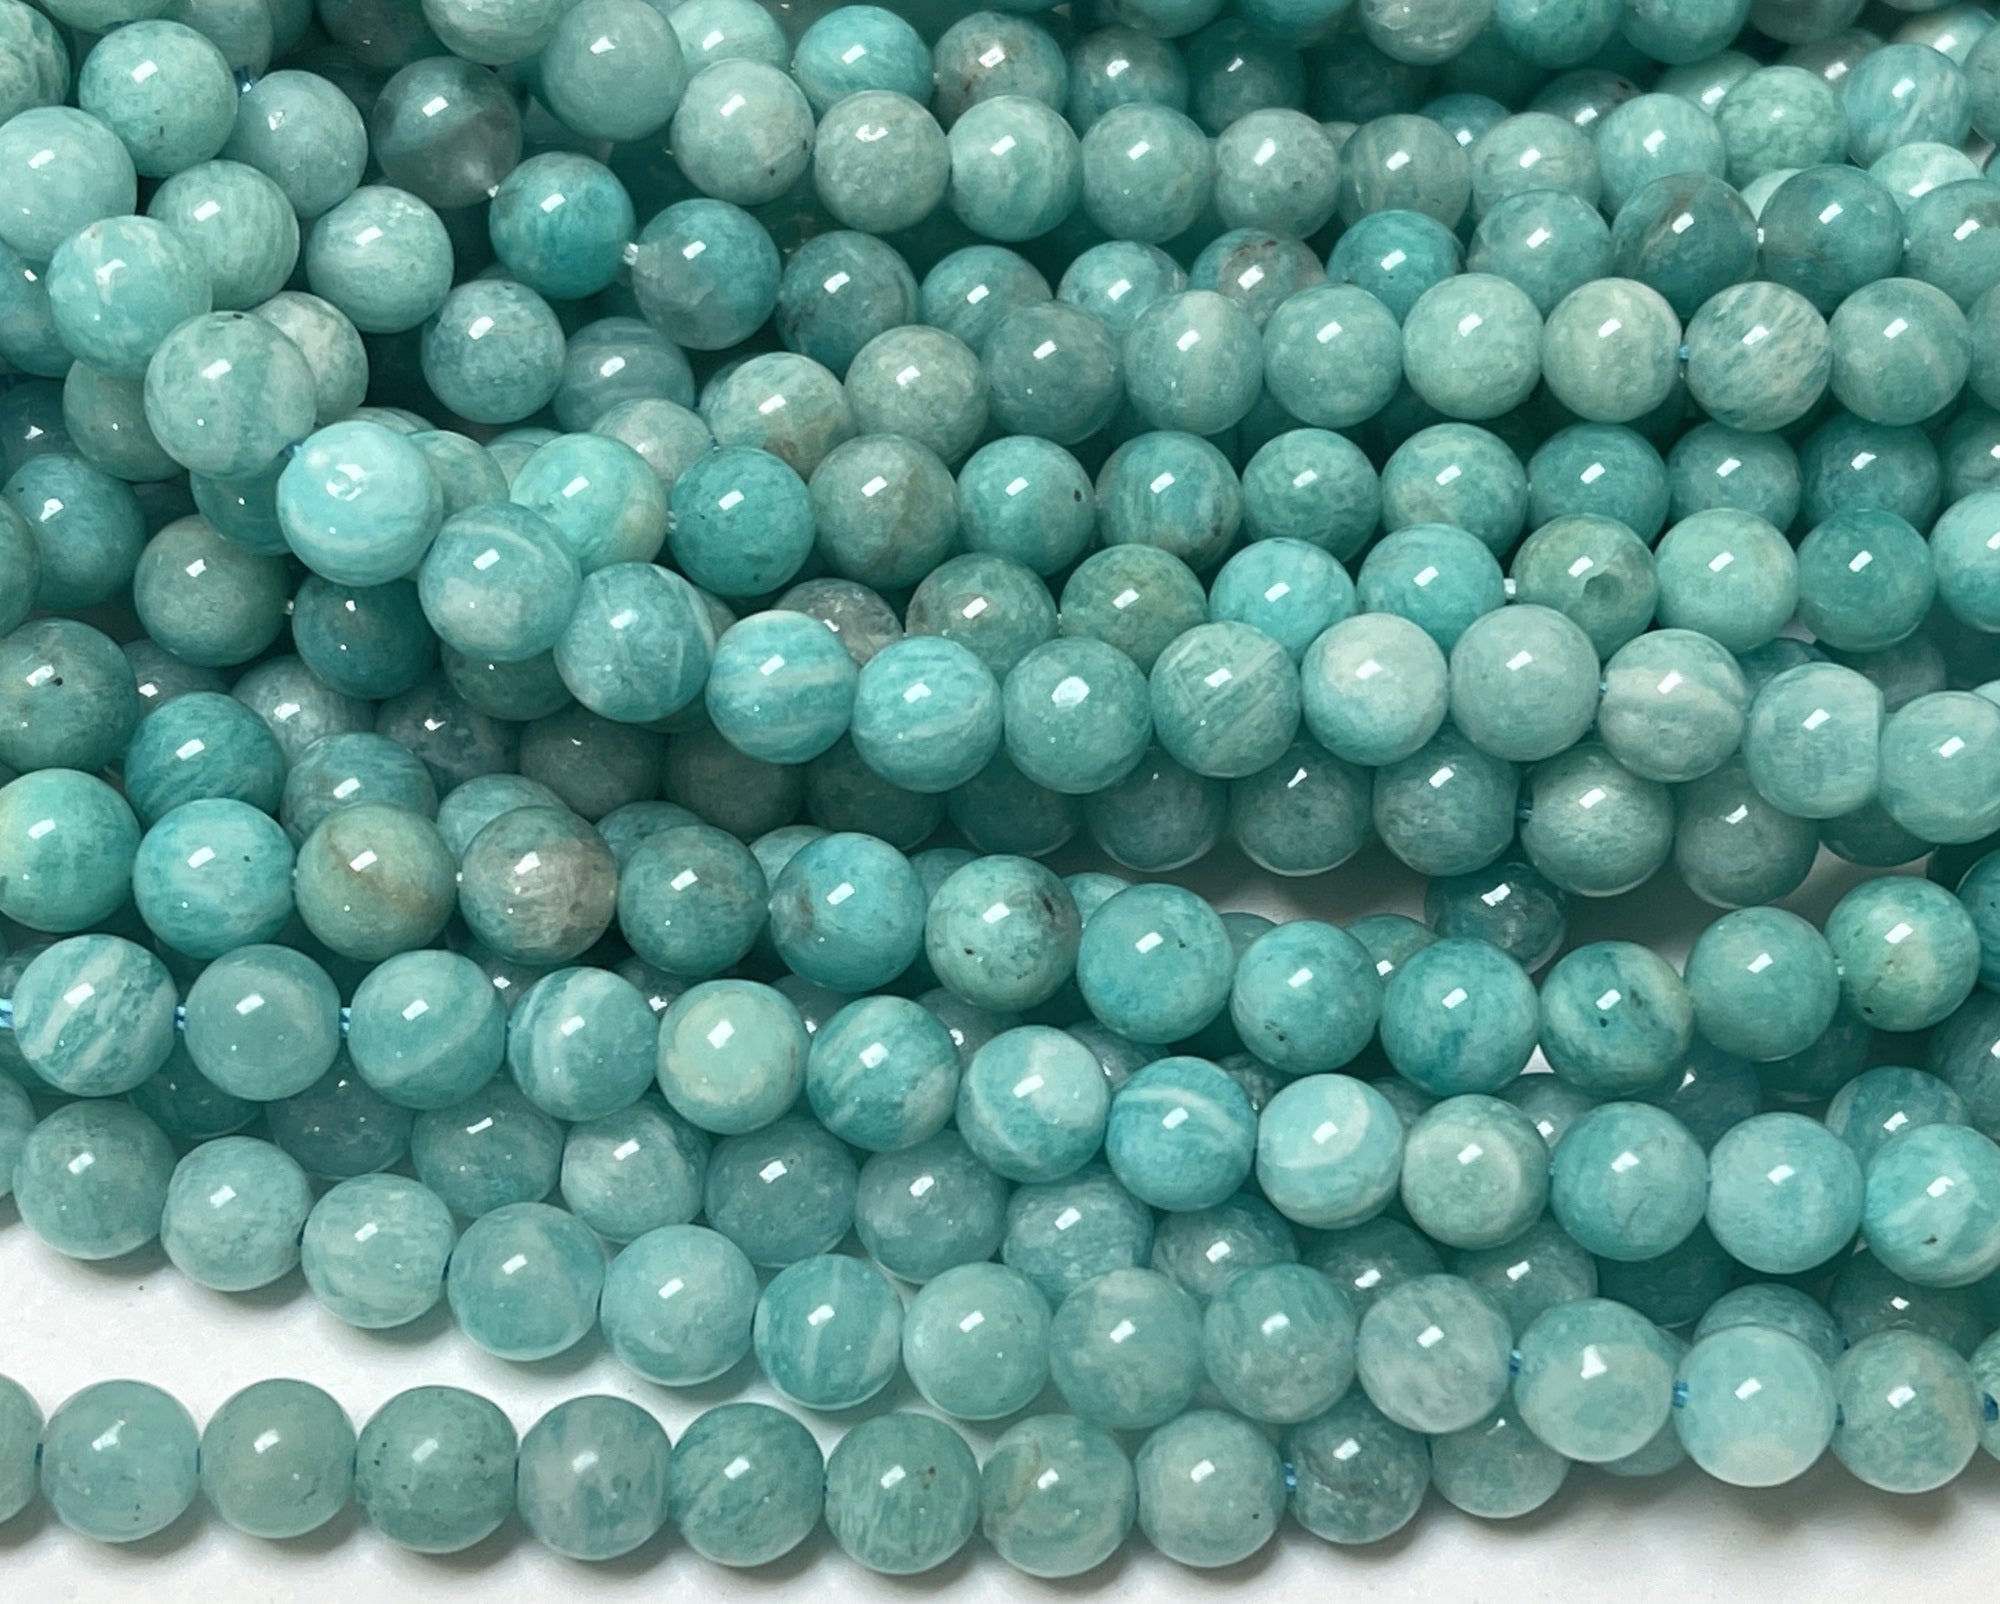 Russian Amazonite 6mm round natural gemstone beads 15.5" strand